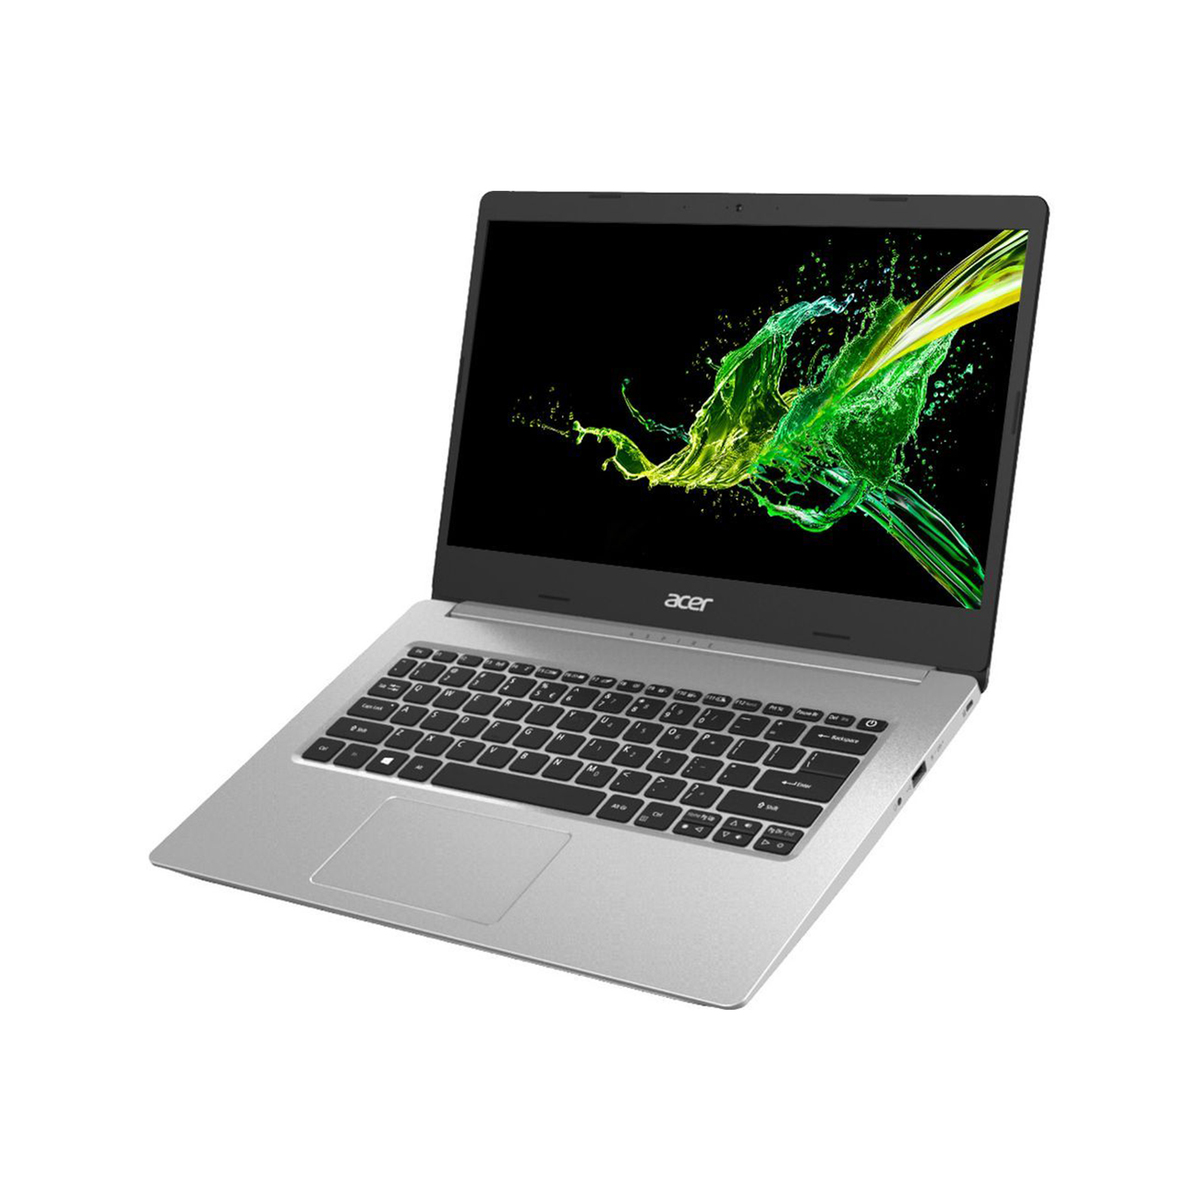 Acer Aspire A514-NXHZ5EM004,Intel Core i7,8GB RAM,1TB SSD,2GB MX 350 VGA,14"FHD,Windows 10,Silver